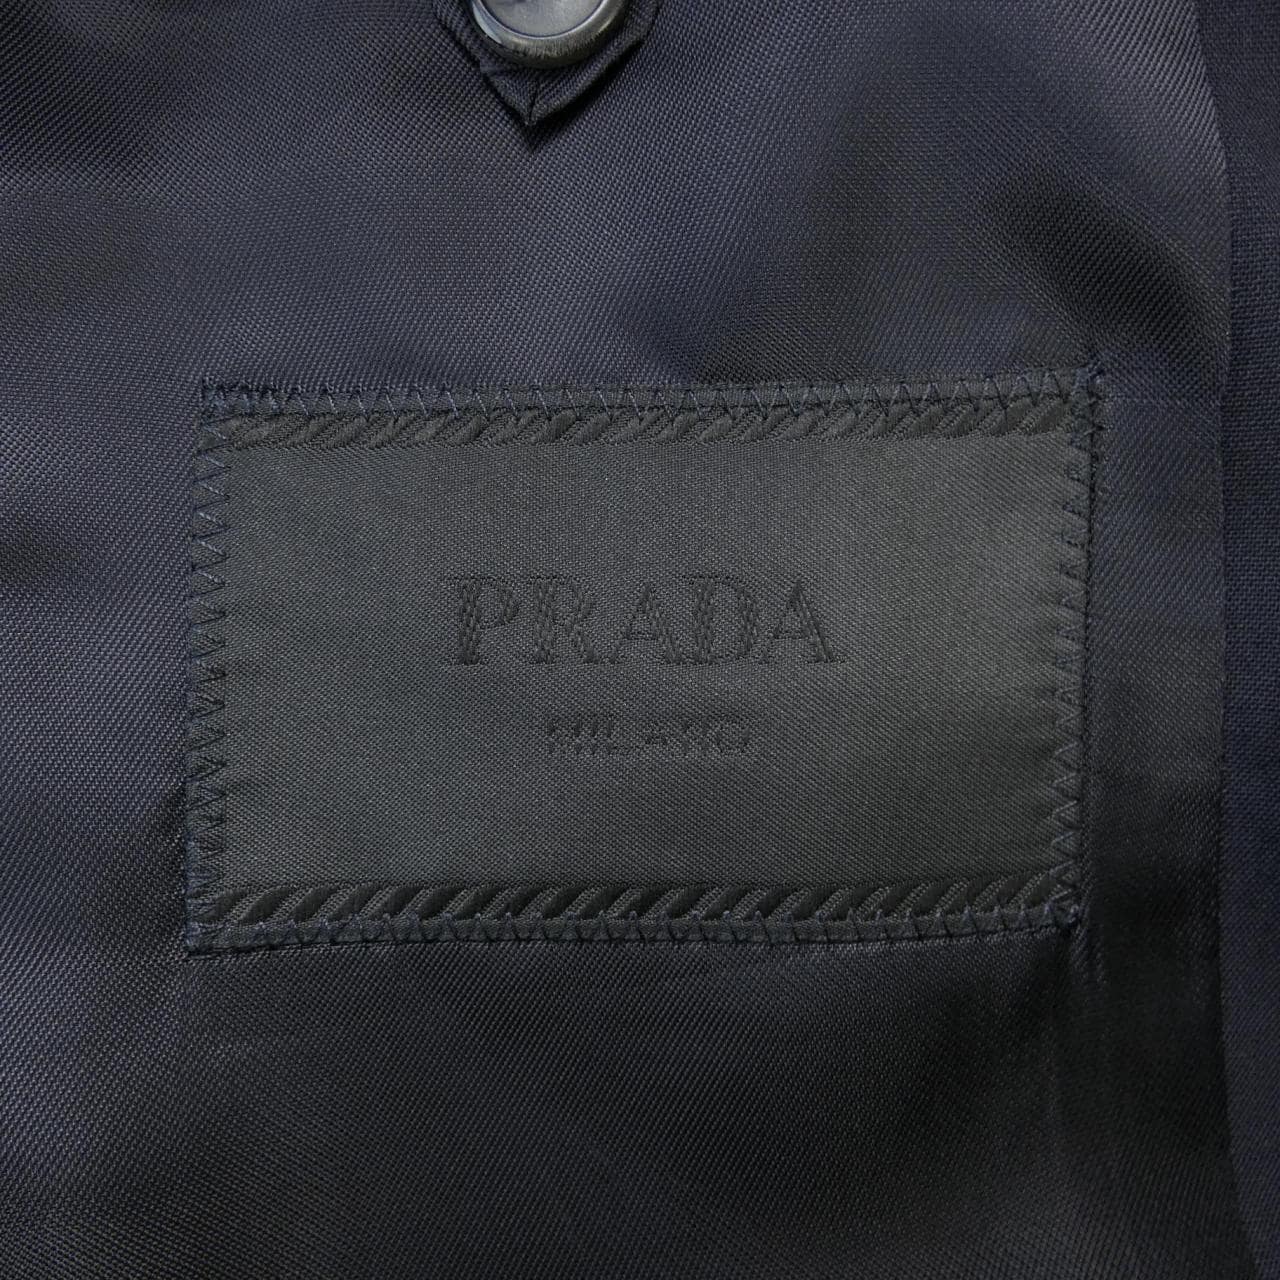 プラダ PRADA ジャケット